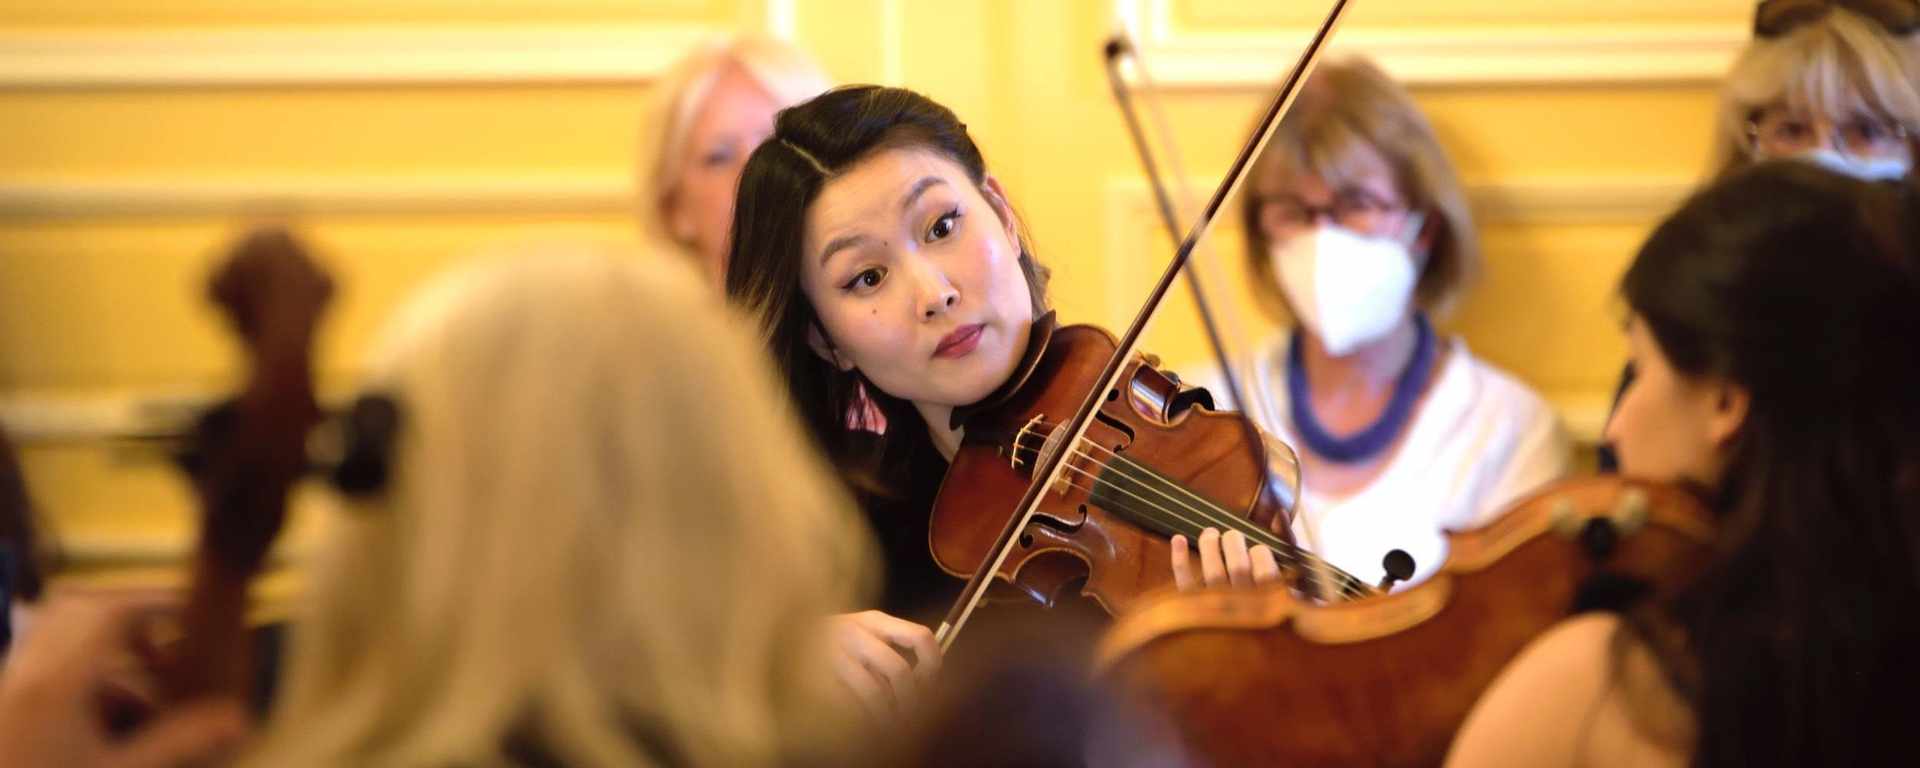 Violoniste coréenne  diplômée de master concert à la Haute École de musique de Genève-Neuchâtel 